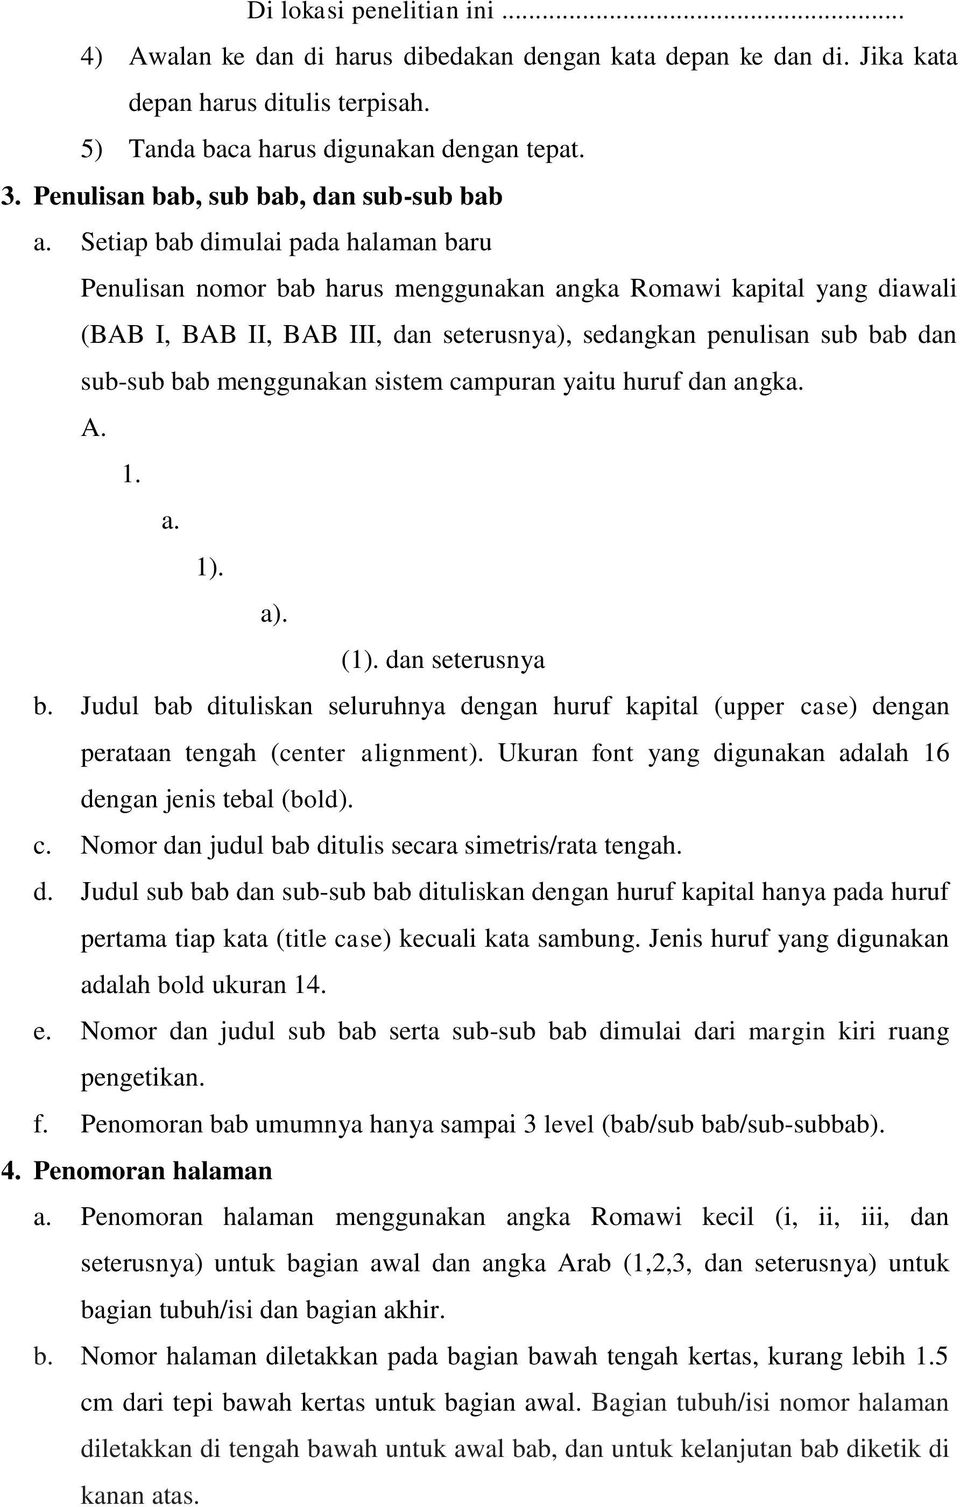 Setiap bab dimulai pada halaman baru Penulisan nomor bab harus menggunakan angka Romawi kapital yang diawali (BAB I, BAB II, BAB III, dan seterusnya), sedangkan penulisan sub bab dan sub-sub bab